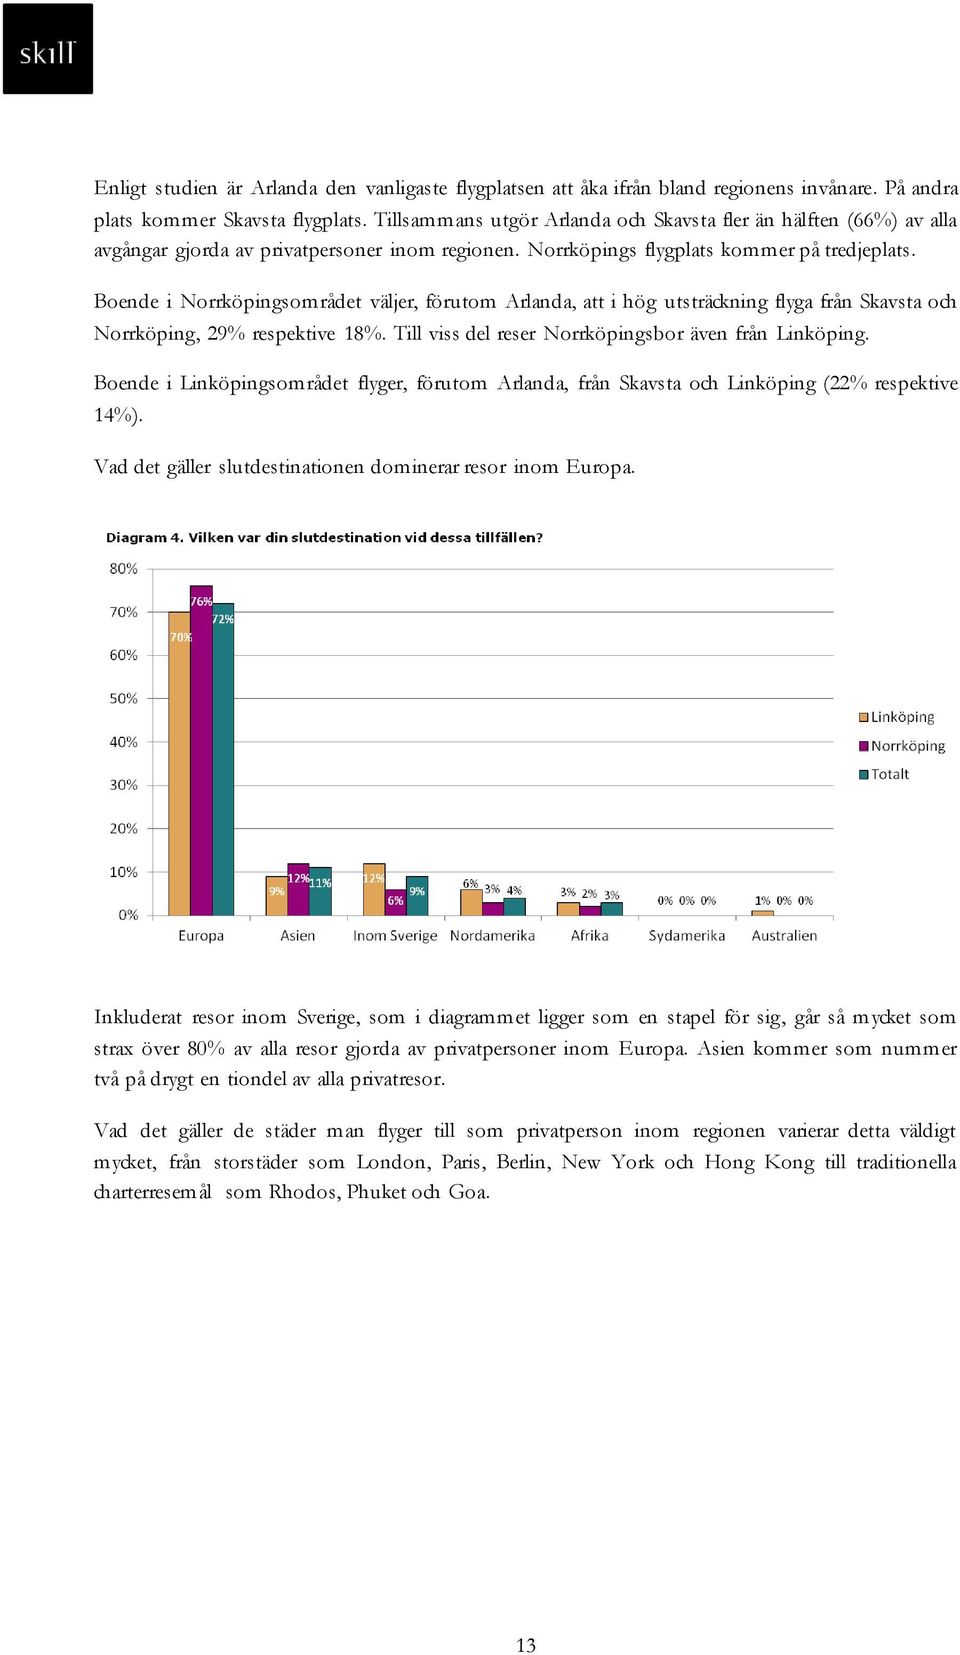 Boende i Norrköpingsområdet väljer, förutom Arlanda, att i hög utsträckning flyga från Skavsta och Norrköping, 29% respektive 18%. Till viss del reser Norrköpingsbor även från Linköping.